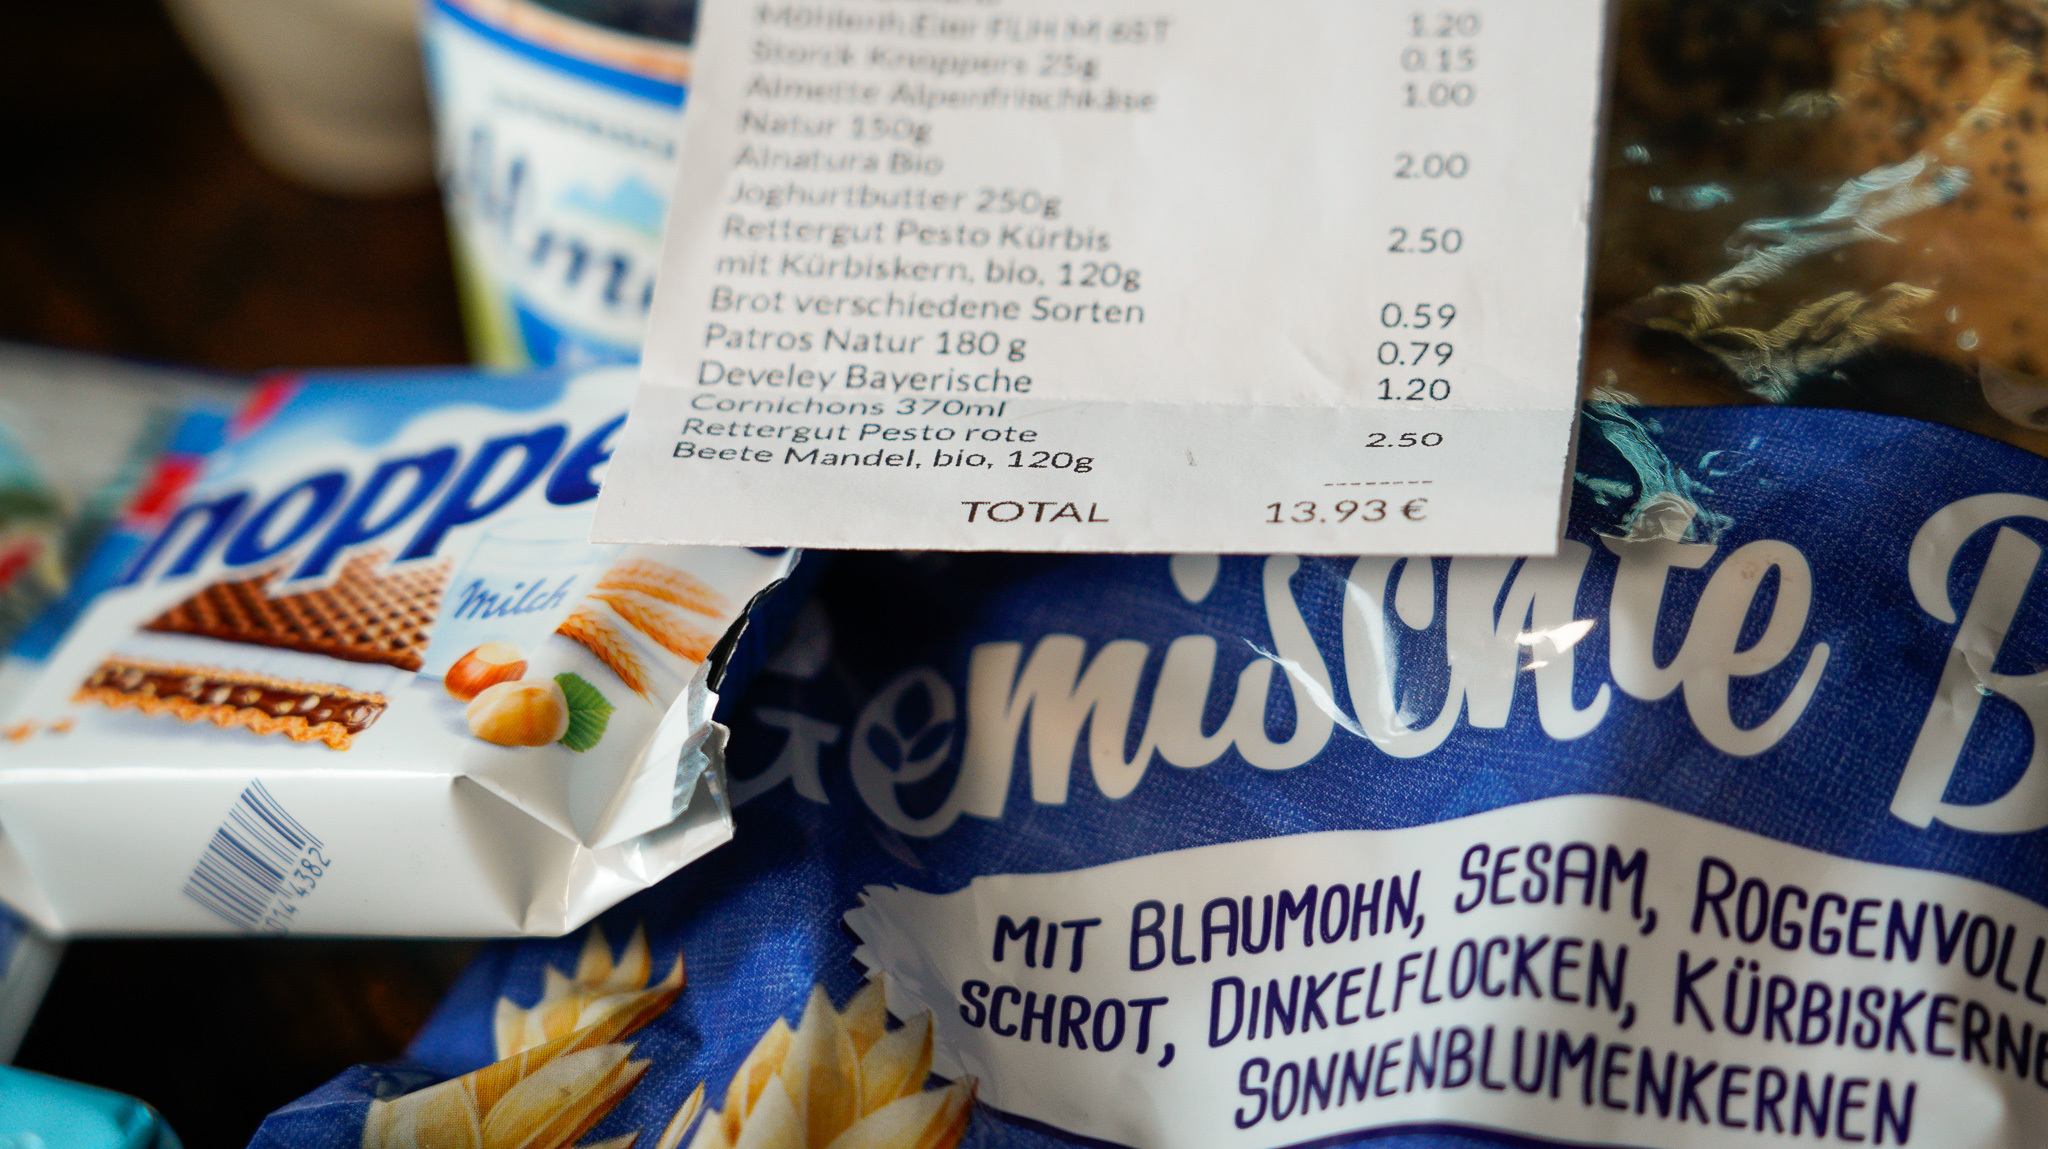 in diesem deutschen supermarkt könnt ihr frühstück, mittag und abendbrot für unter 15 euro einkaufen - und alles mit markenprodukten